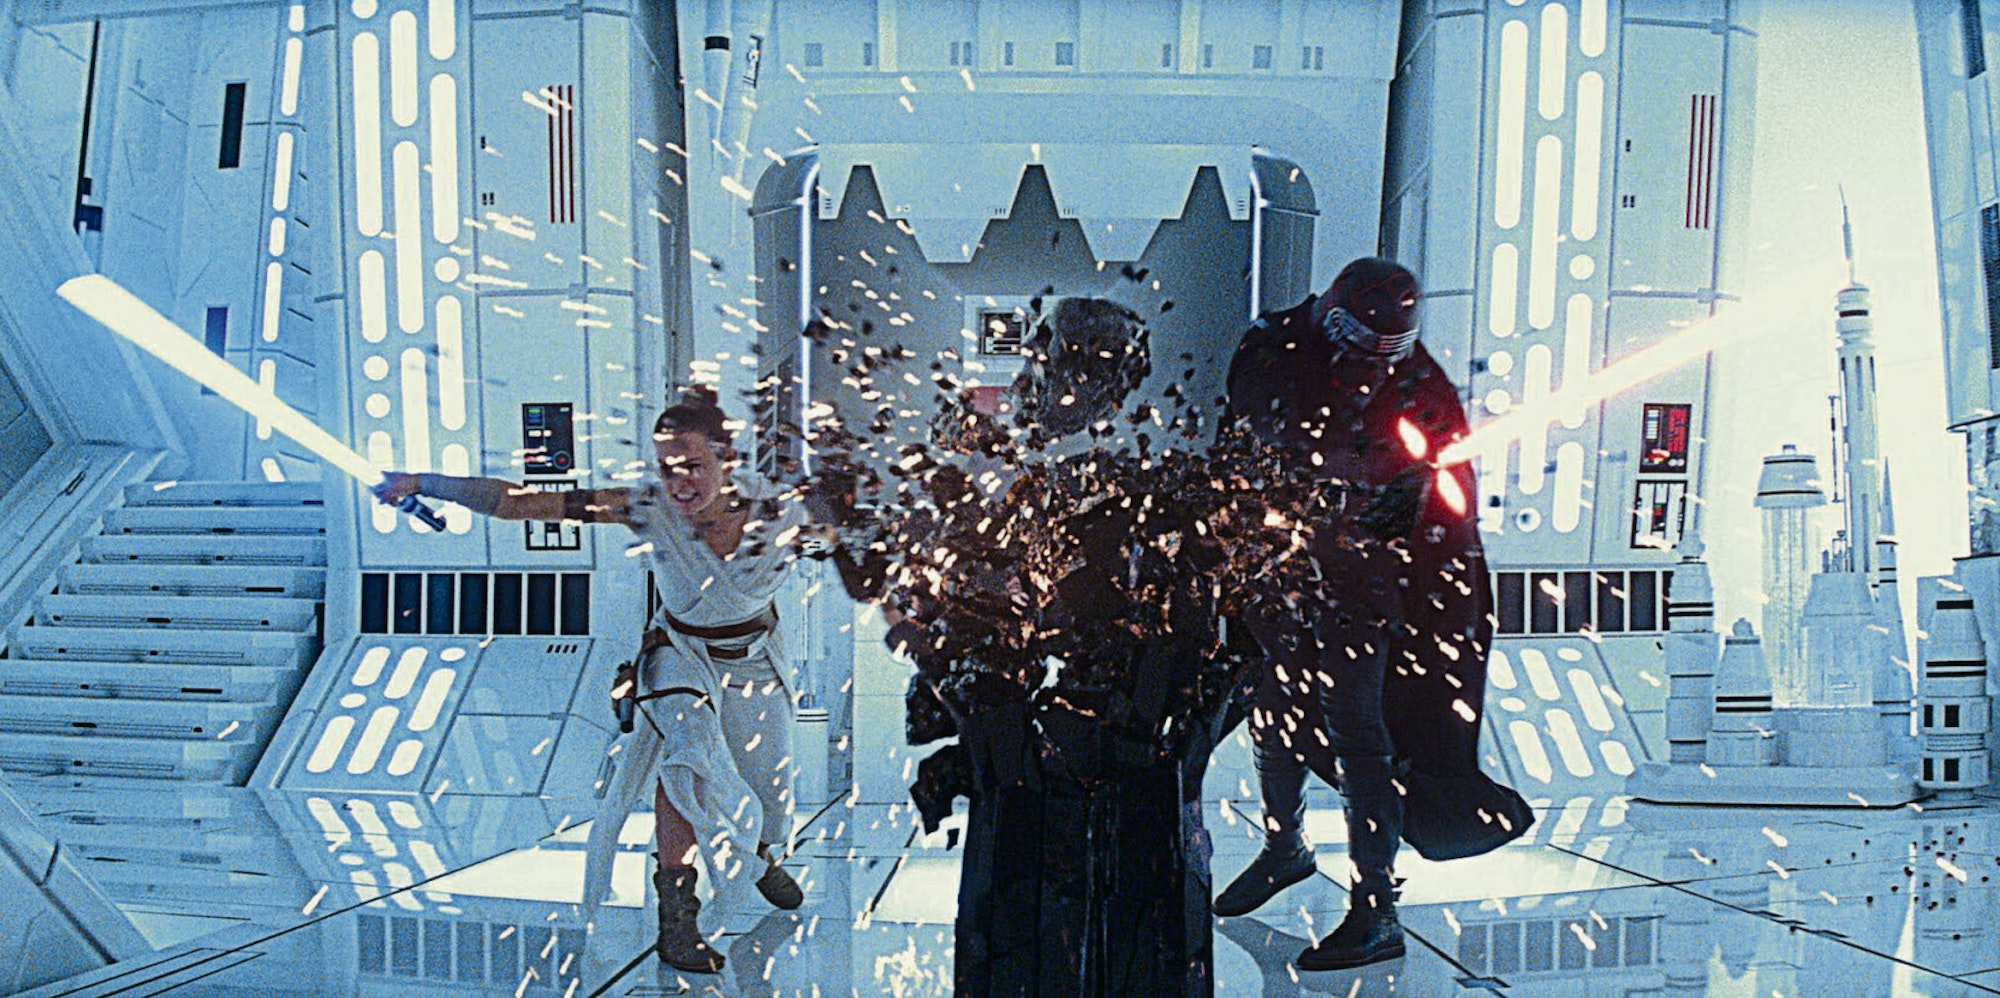 Schwieriges Erbe: Rey und Kylo Ren zerschlagen mit ihren Lichtschwertern die Stele mit der Maske Darth Vaders.